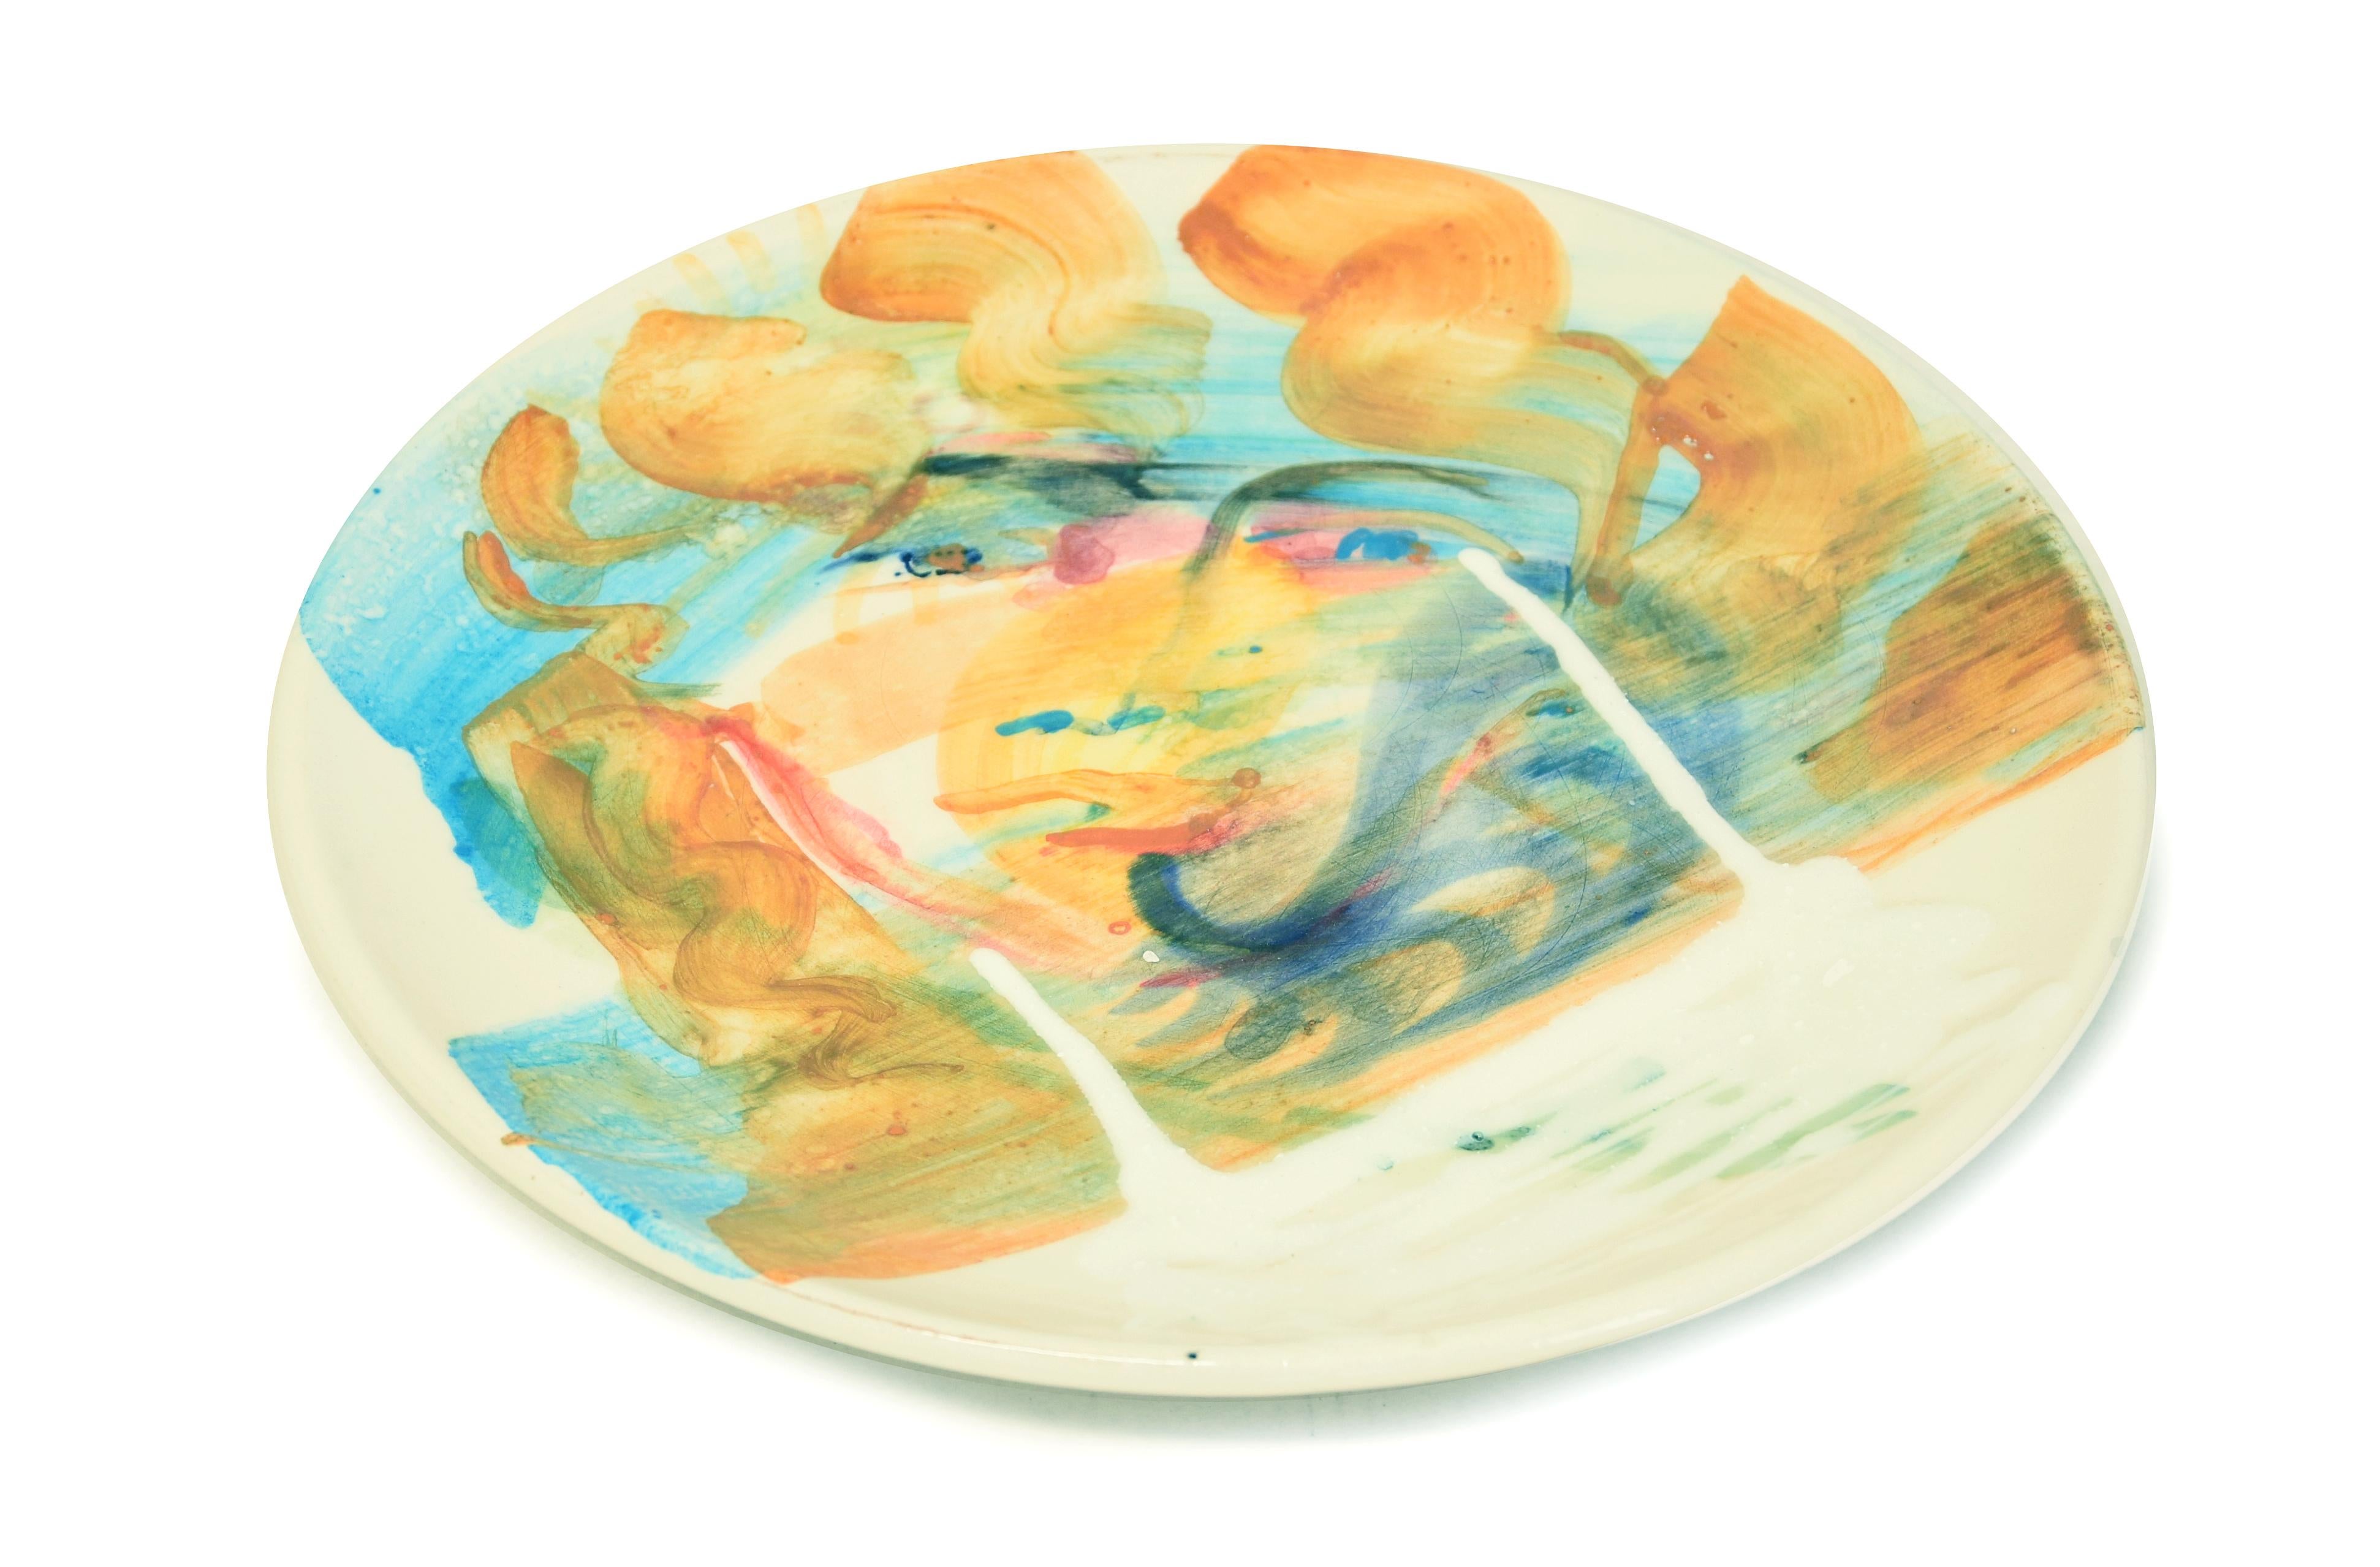 Golden Ringlets - Hand-made Flat Ceramic Dish by A. Kurakina - 2019 - Contemporary Art by Anastasia Kurakina